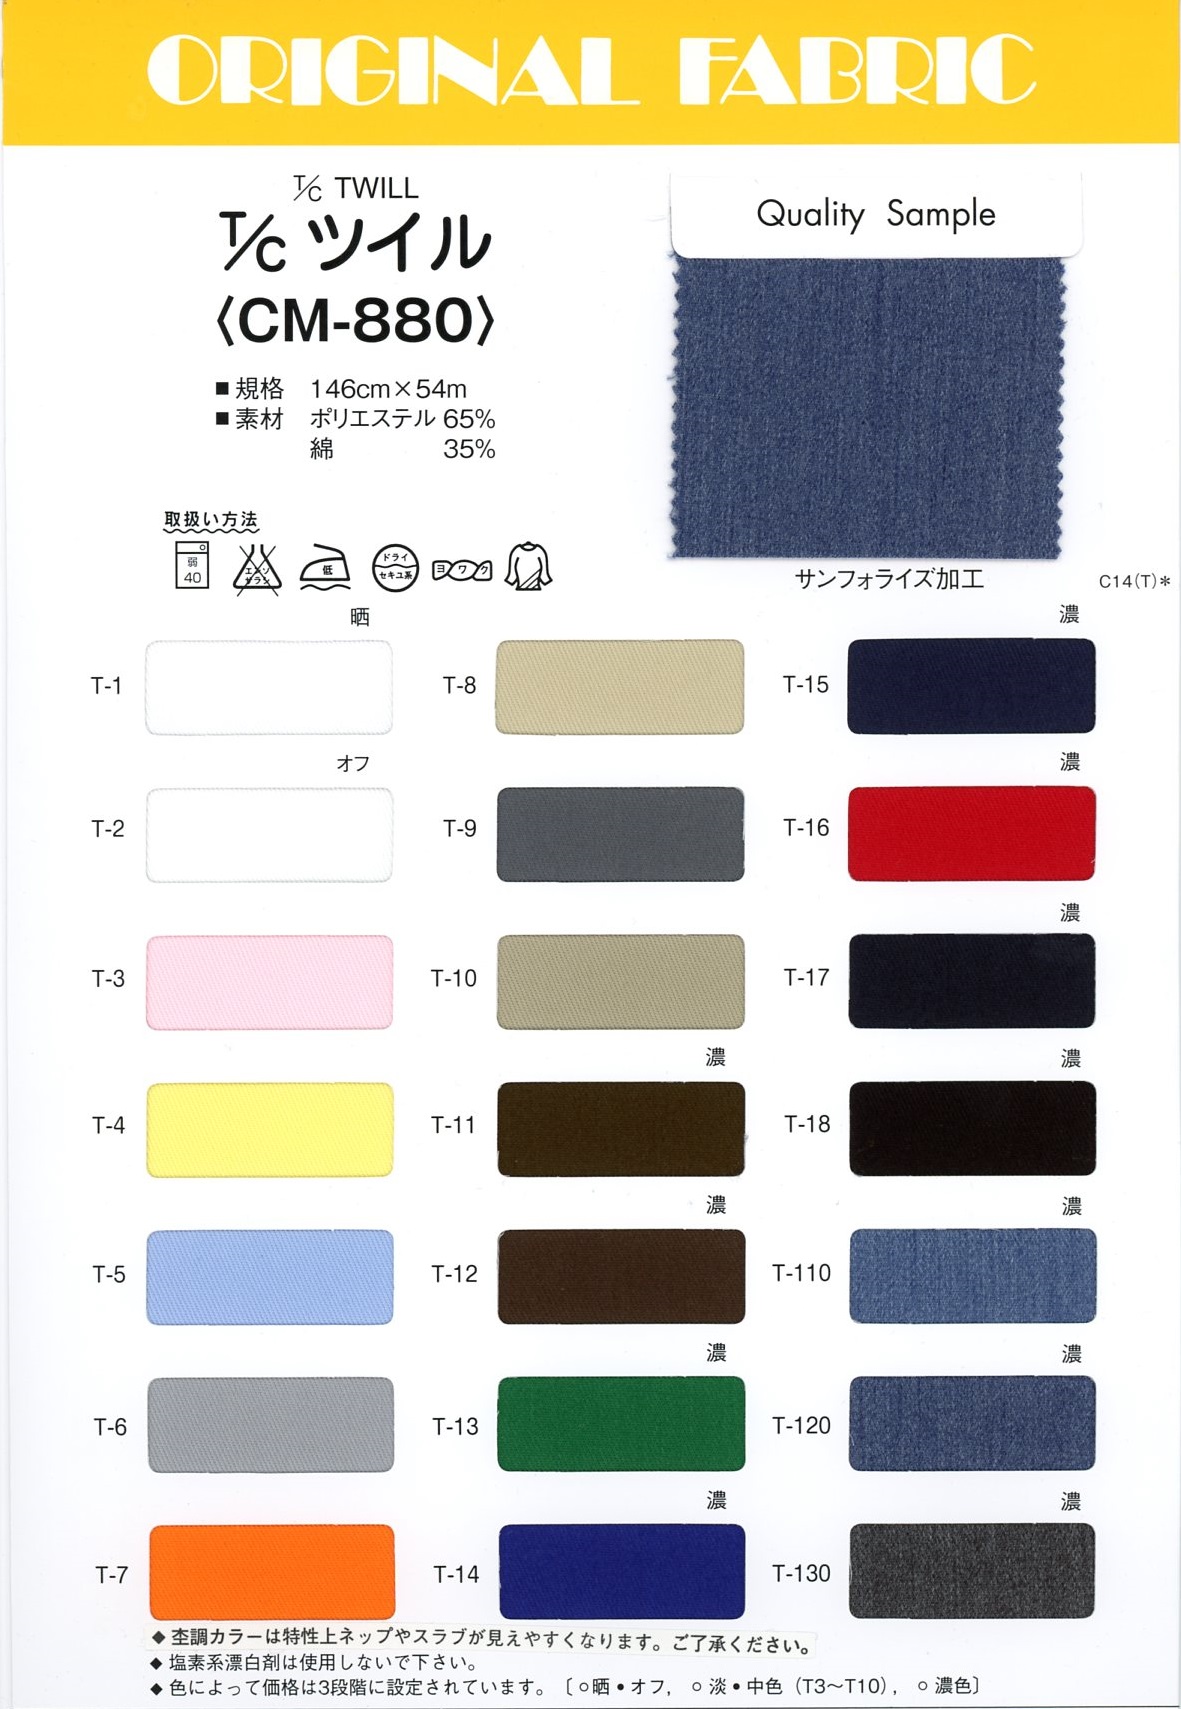 CM-880 T / C Twill[Textile / Fabric] Masuda